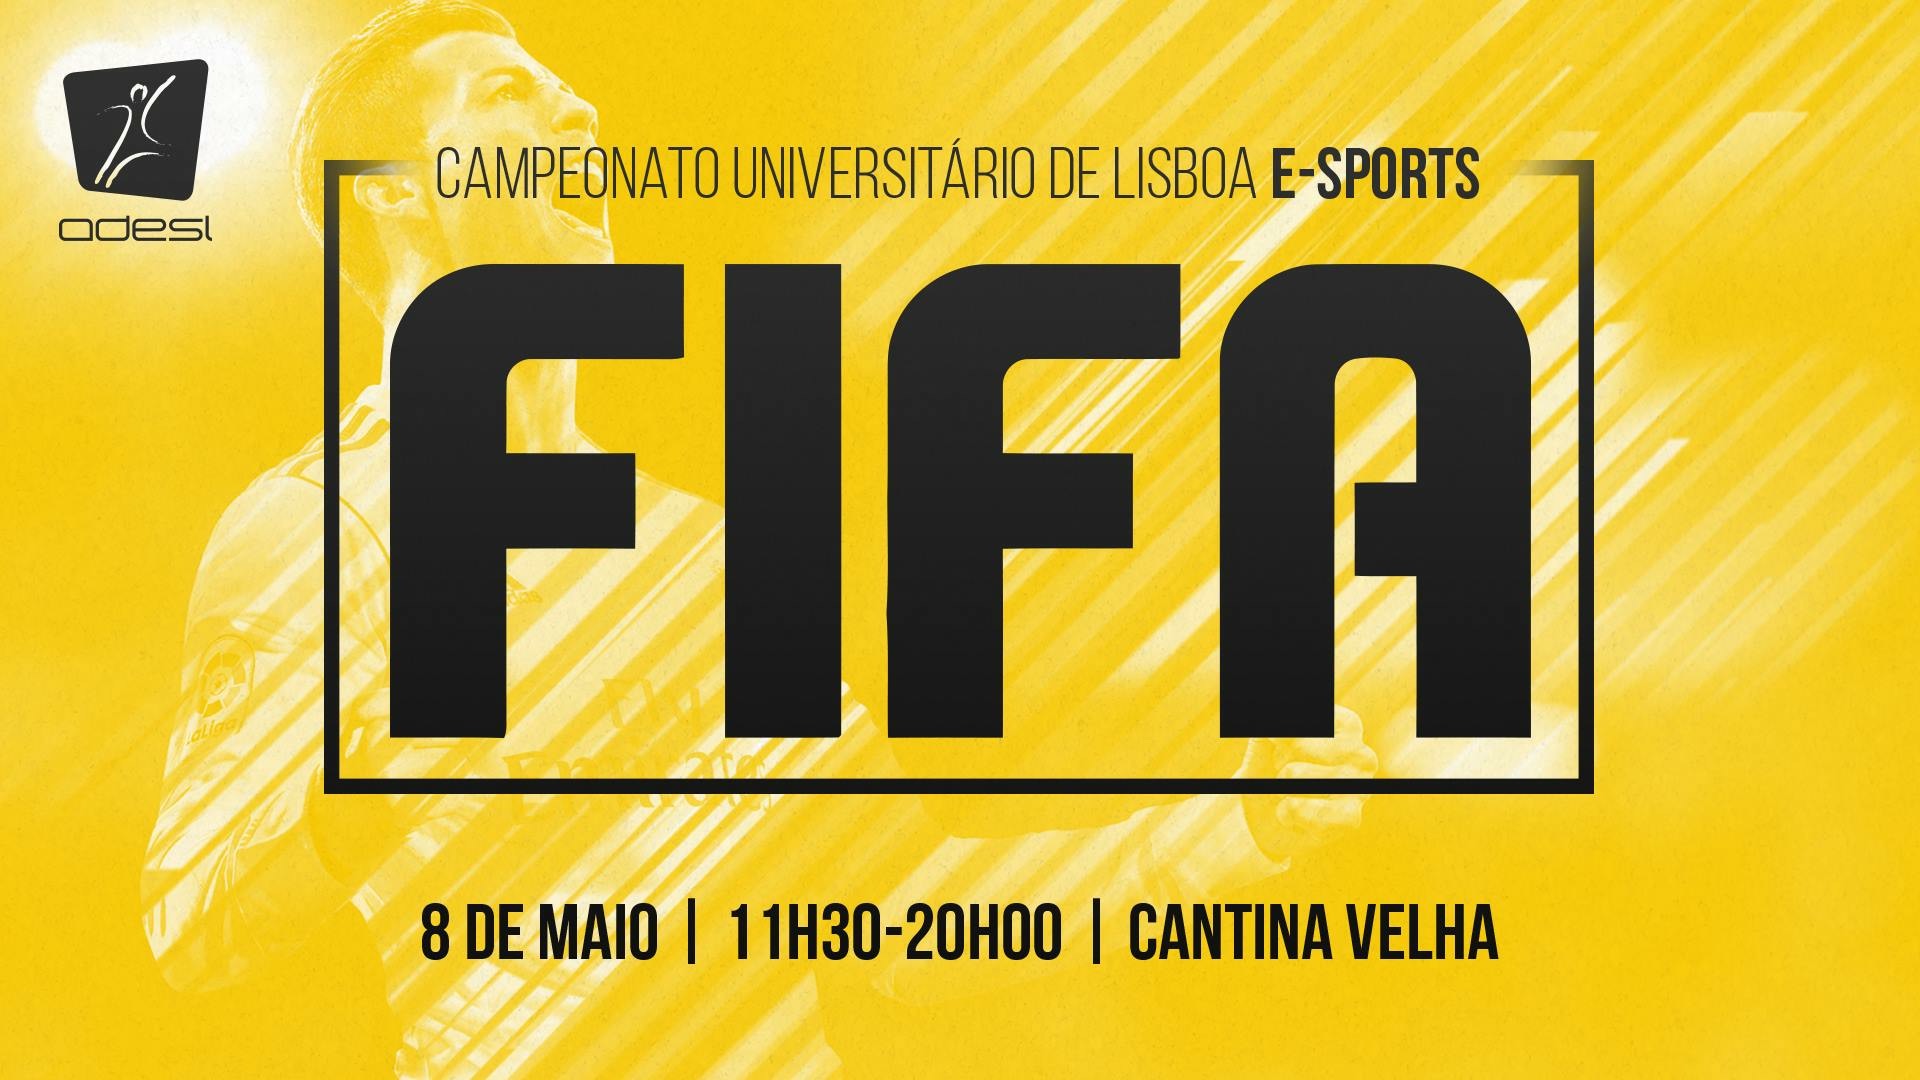 Campeonato Universitário de Lisboa de Esports – FIFA